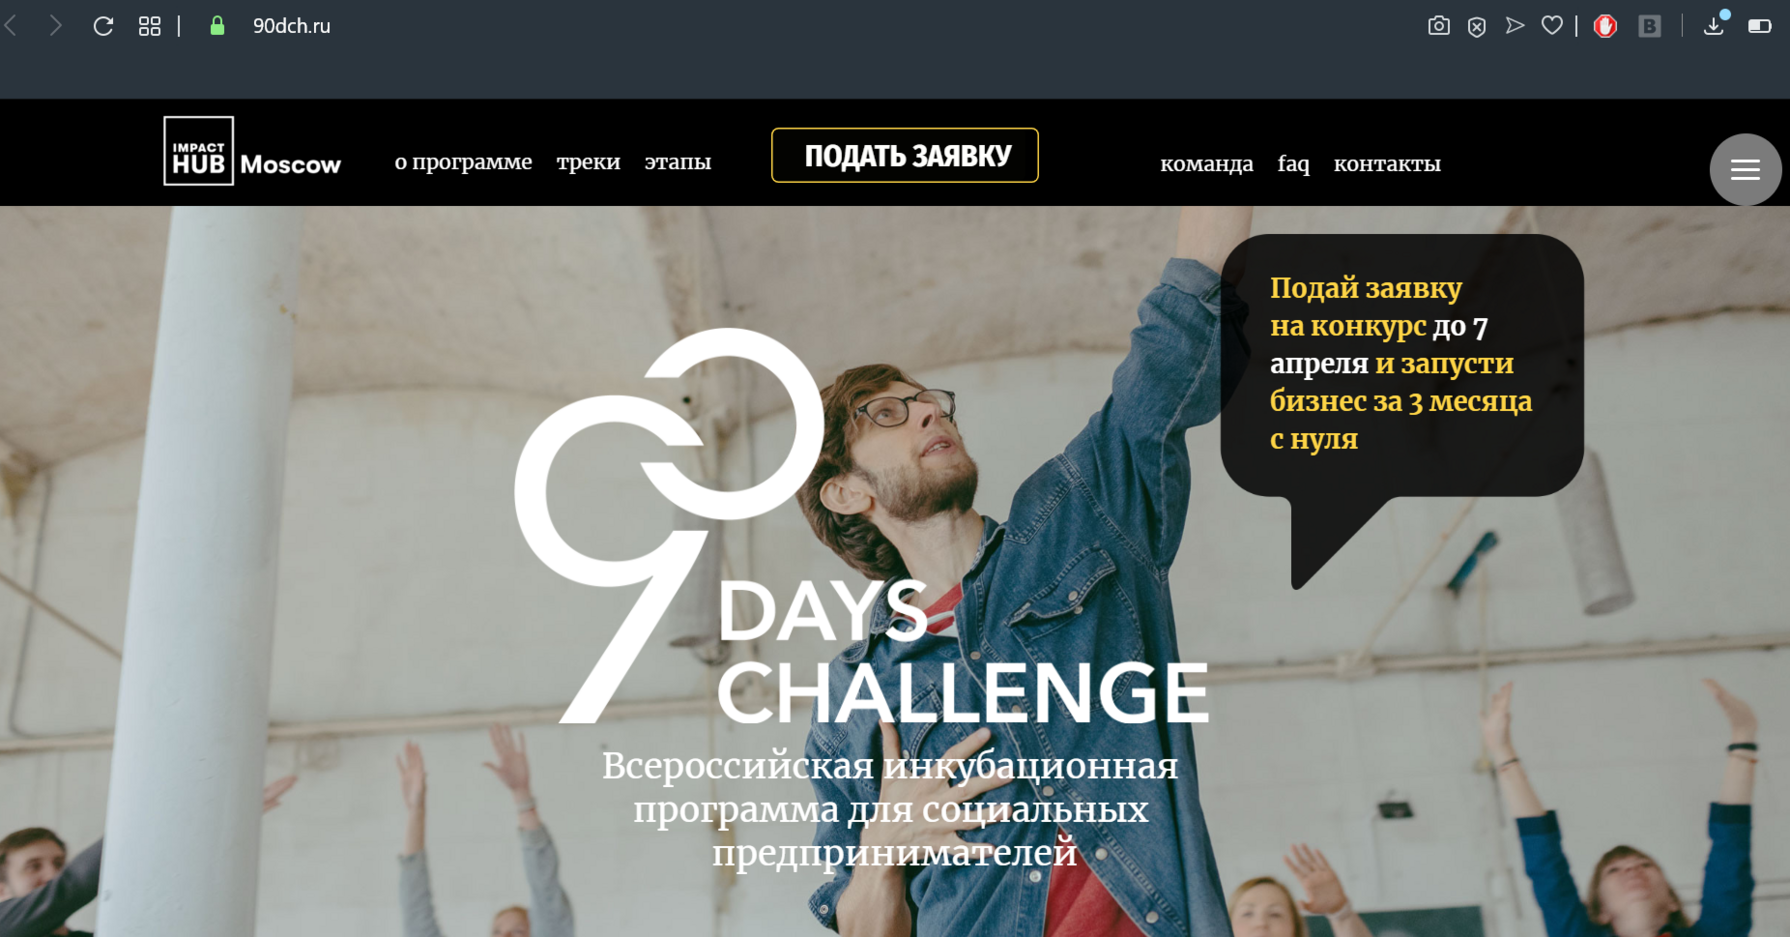 Белгородцев приглашают поучаствовать в инкубационной программе для социальных предпринимателей